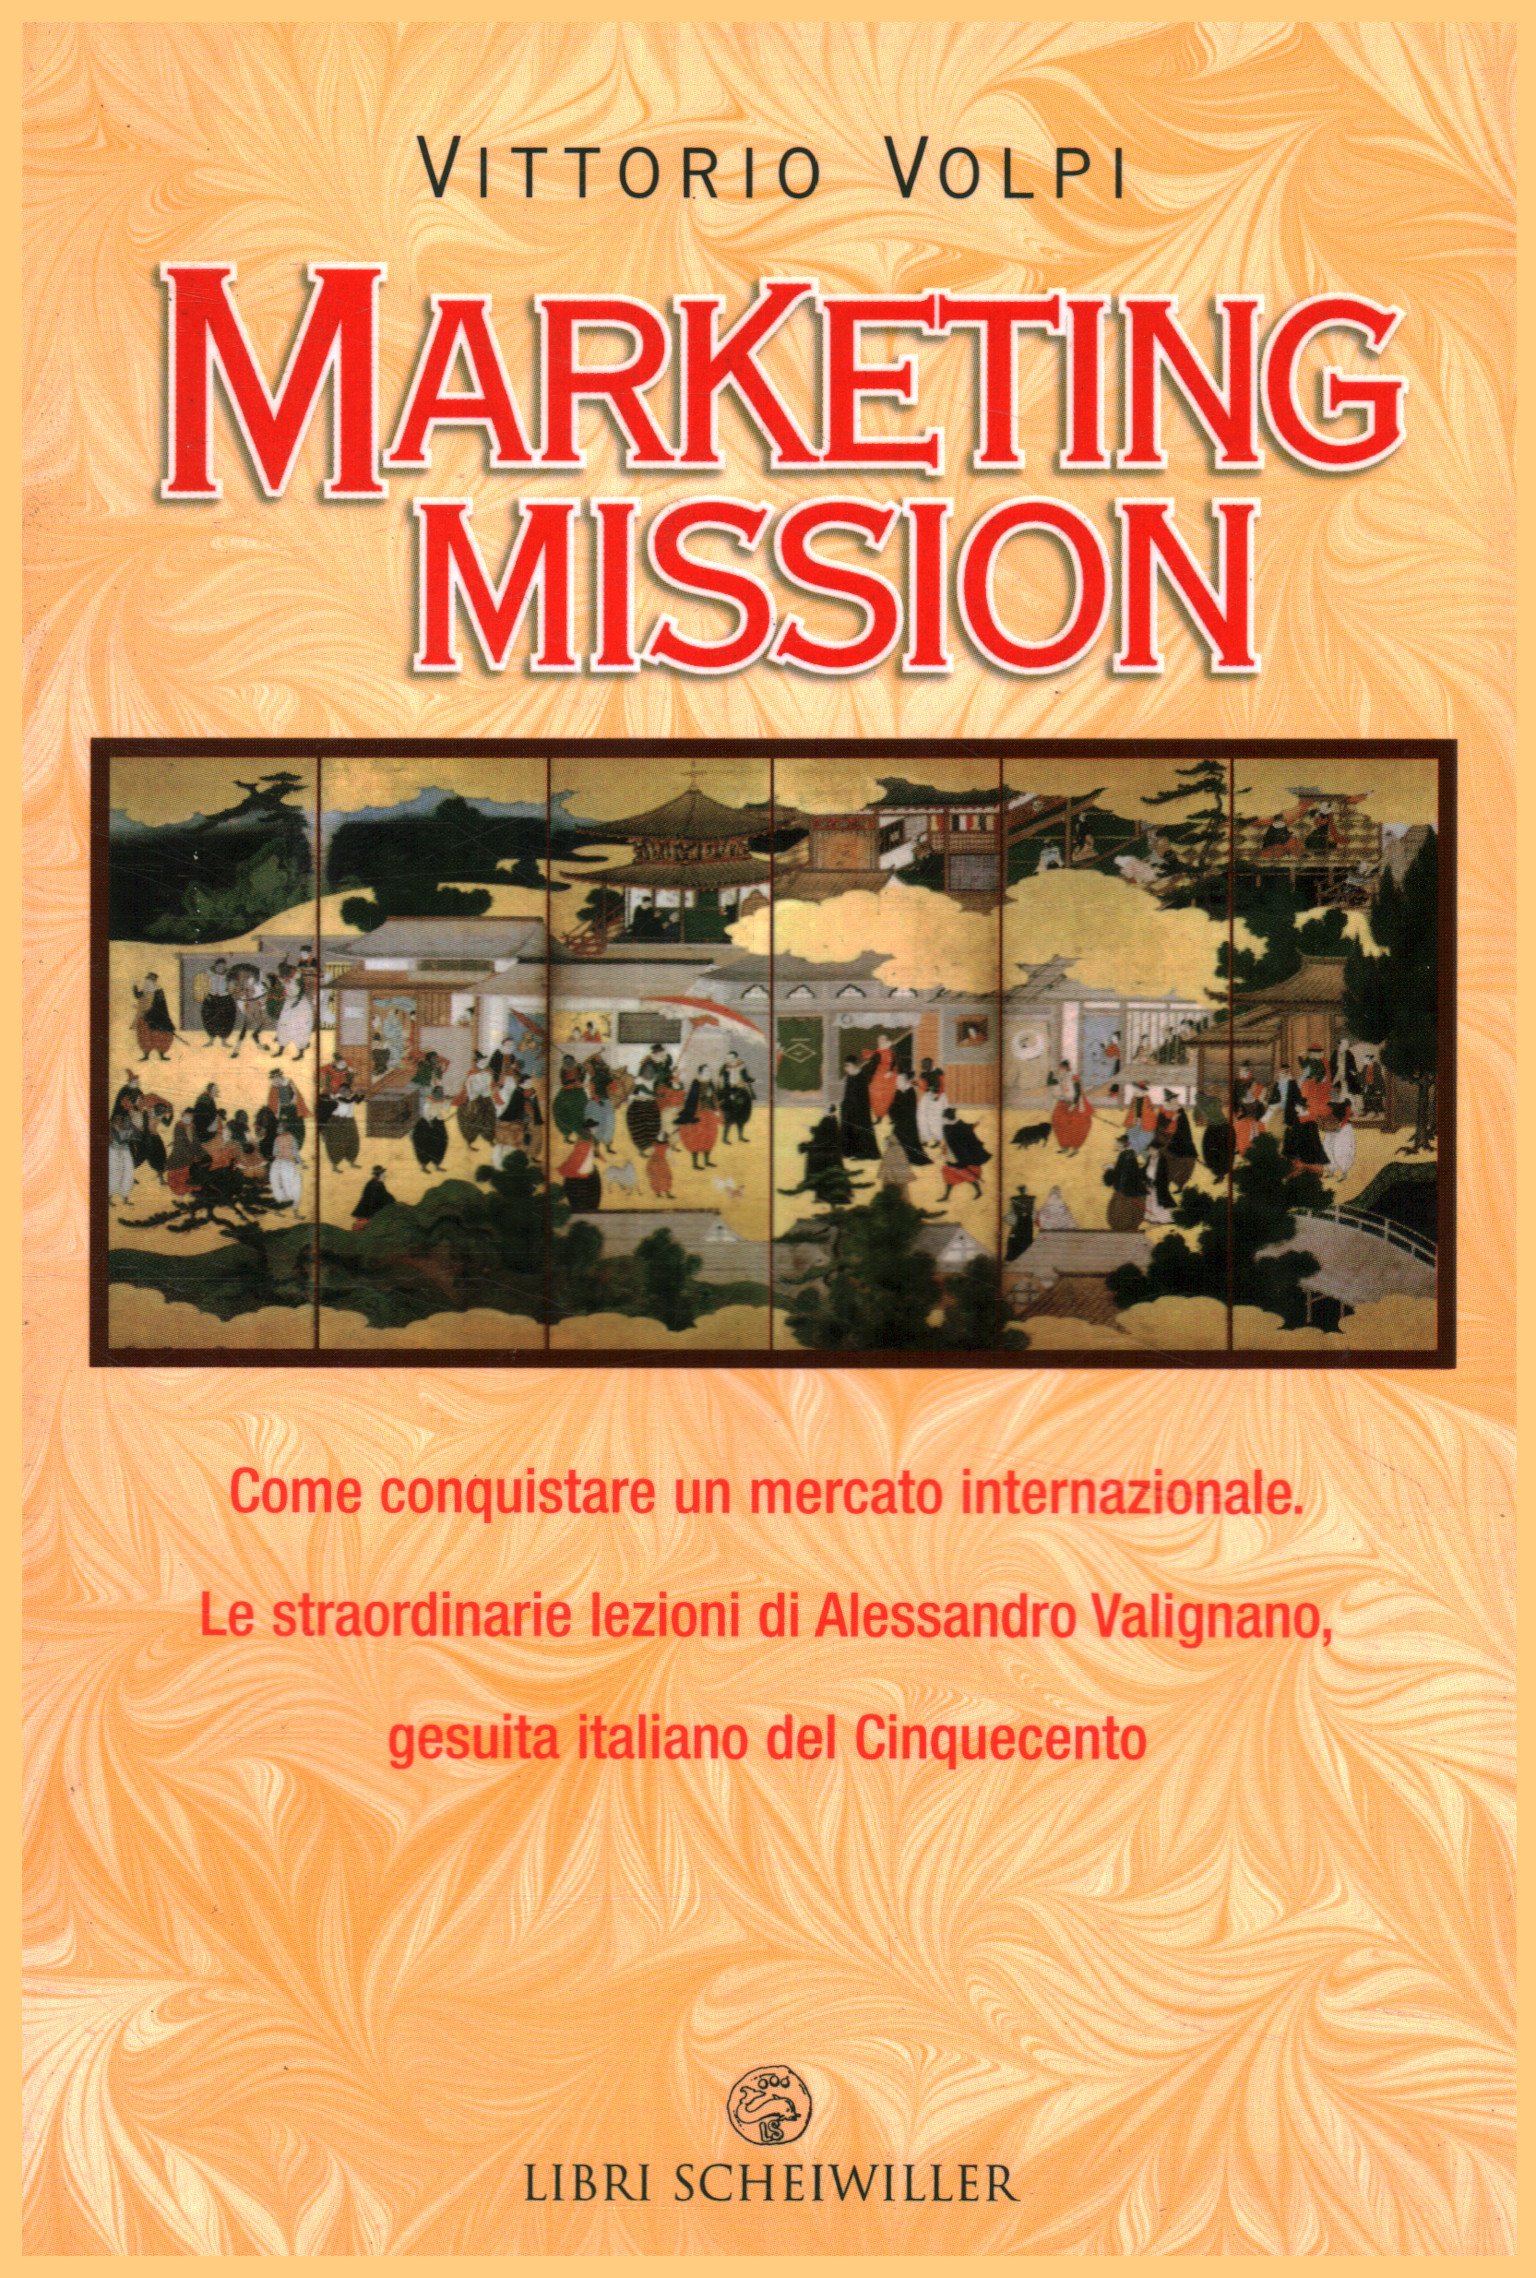 misión de marketing